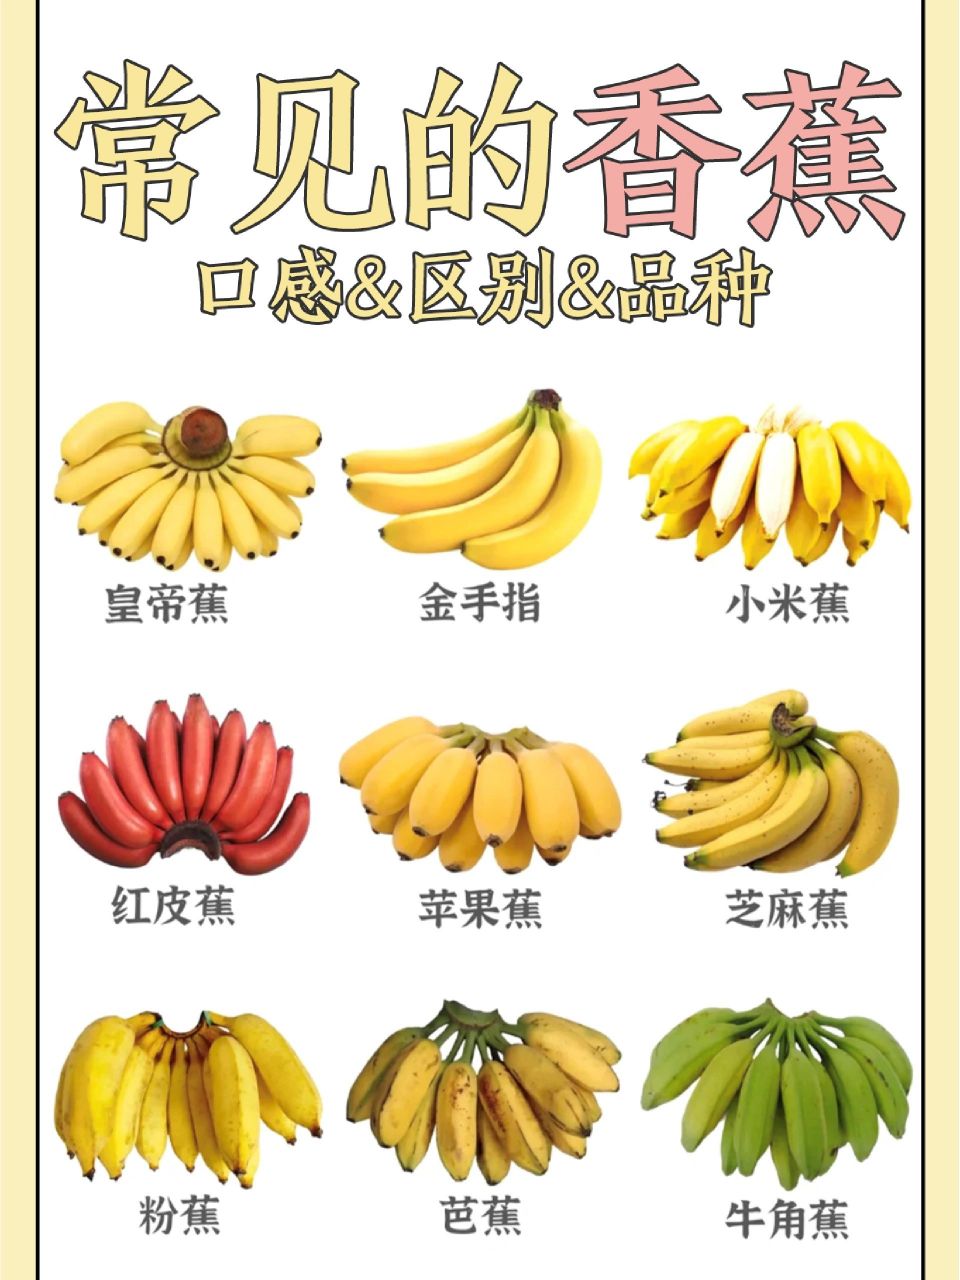 左滑查看常见的香蕉品种